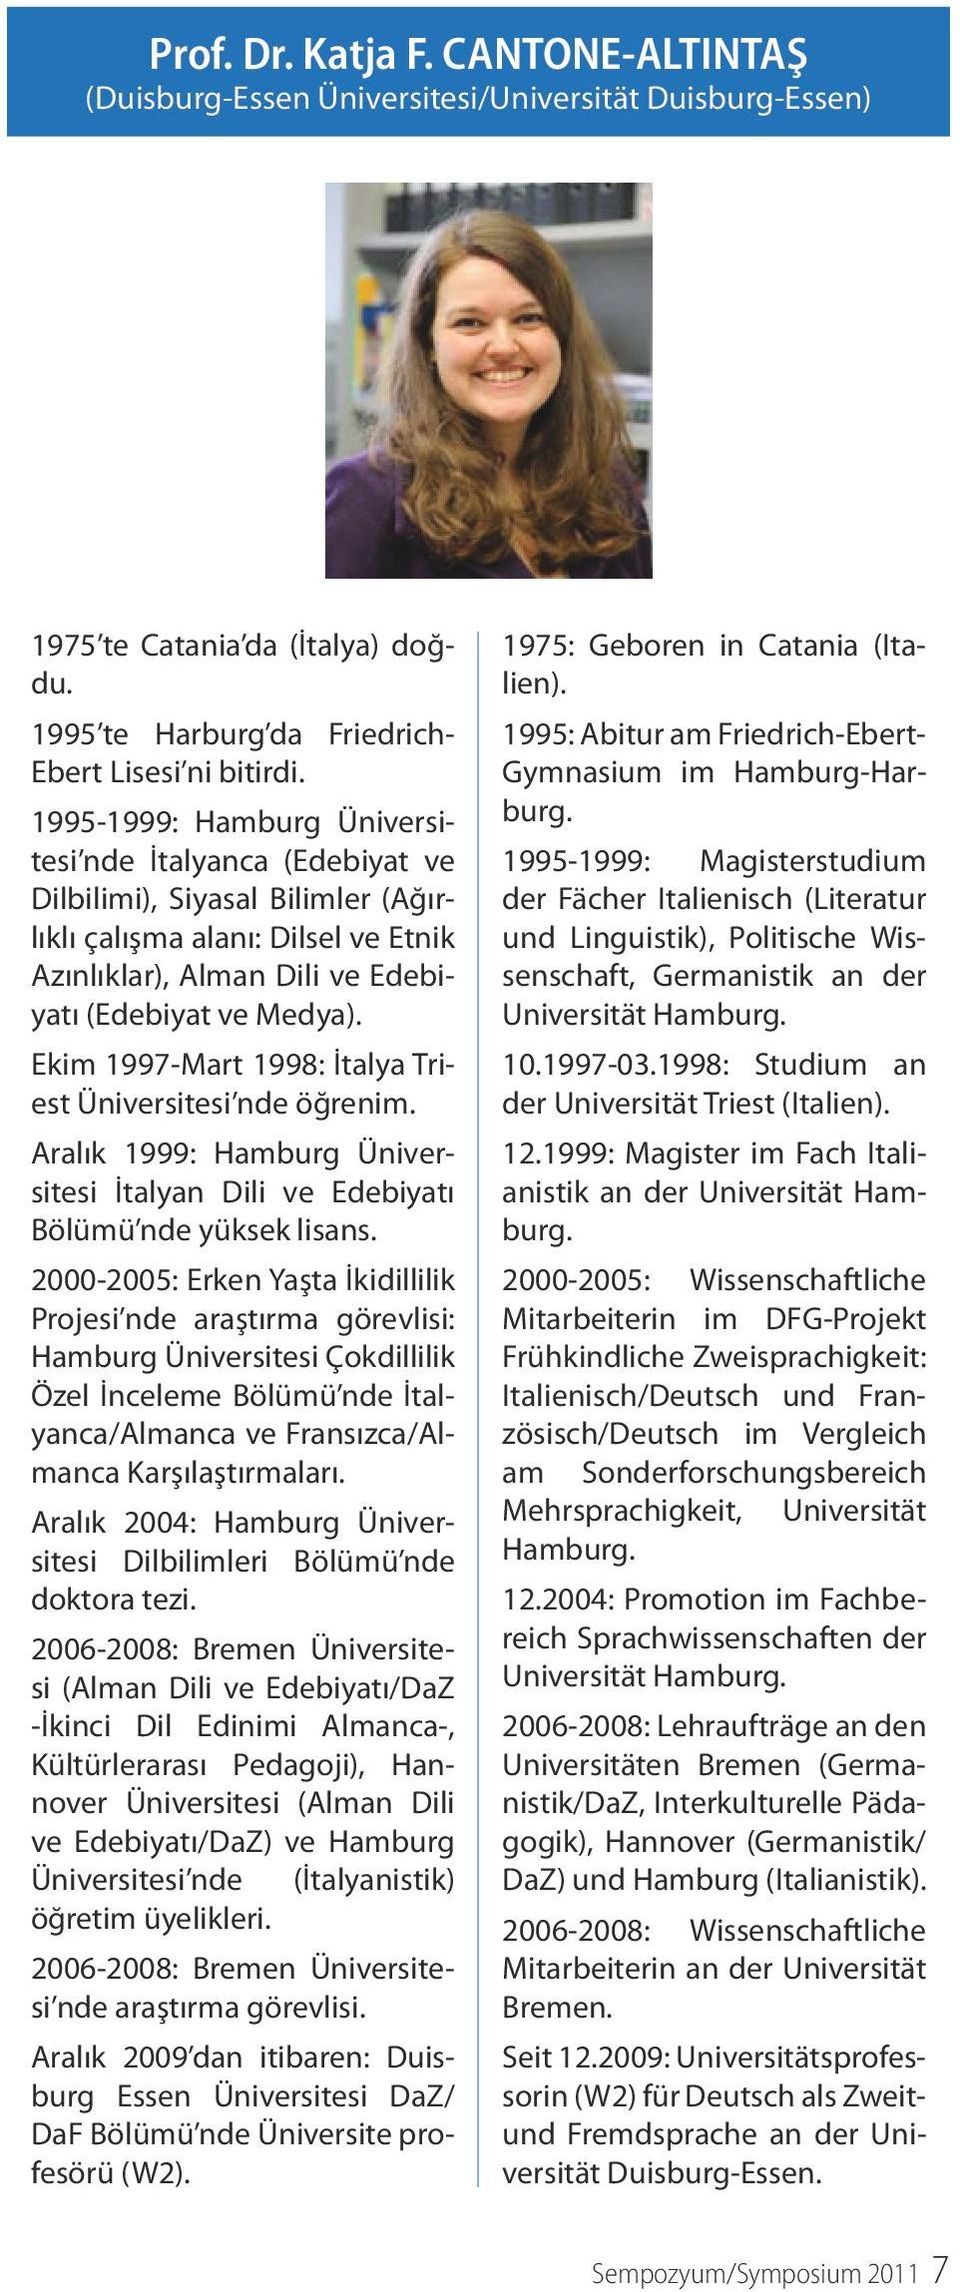 Ekim 1997-Mart 1998: İtalya Triest Üniversitesi nde öğrenim. Aralık 1999: Hamburg Üniversitesi İtalyan Dili ve Edebiyatı Bölümü nde yüksek lisans.